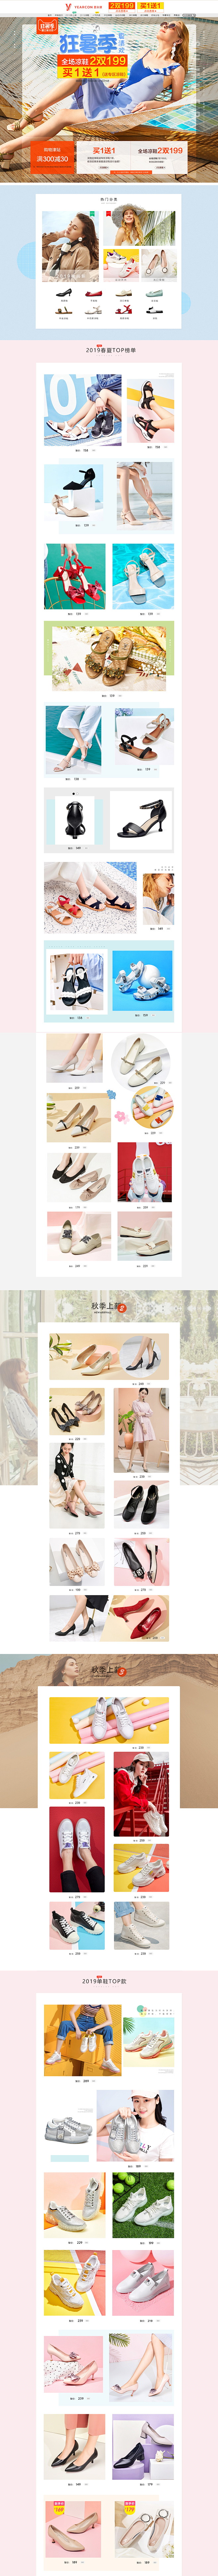 @艺鱼视觉
女鞋首页活动页面设计